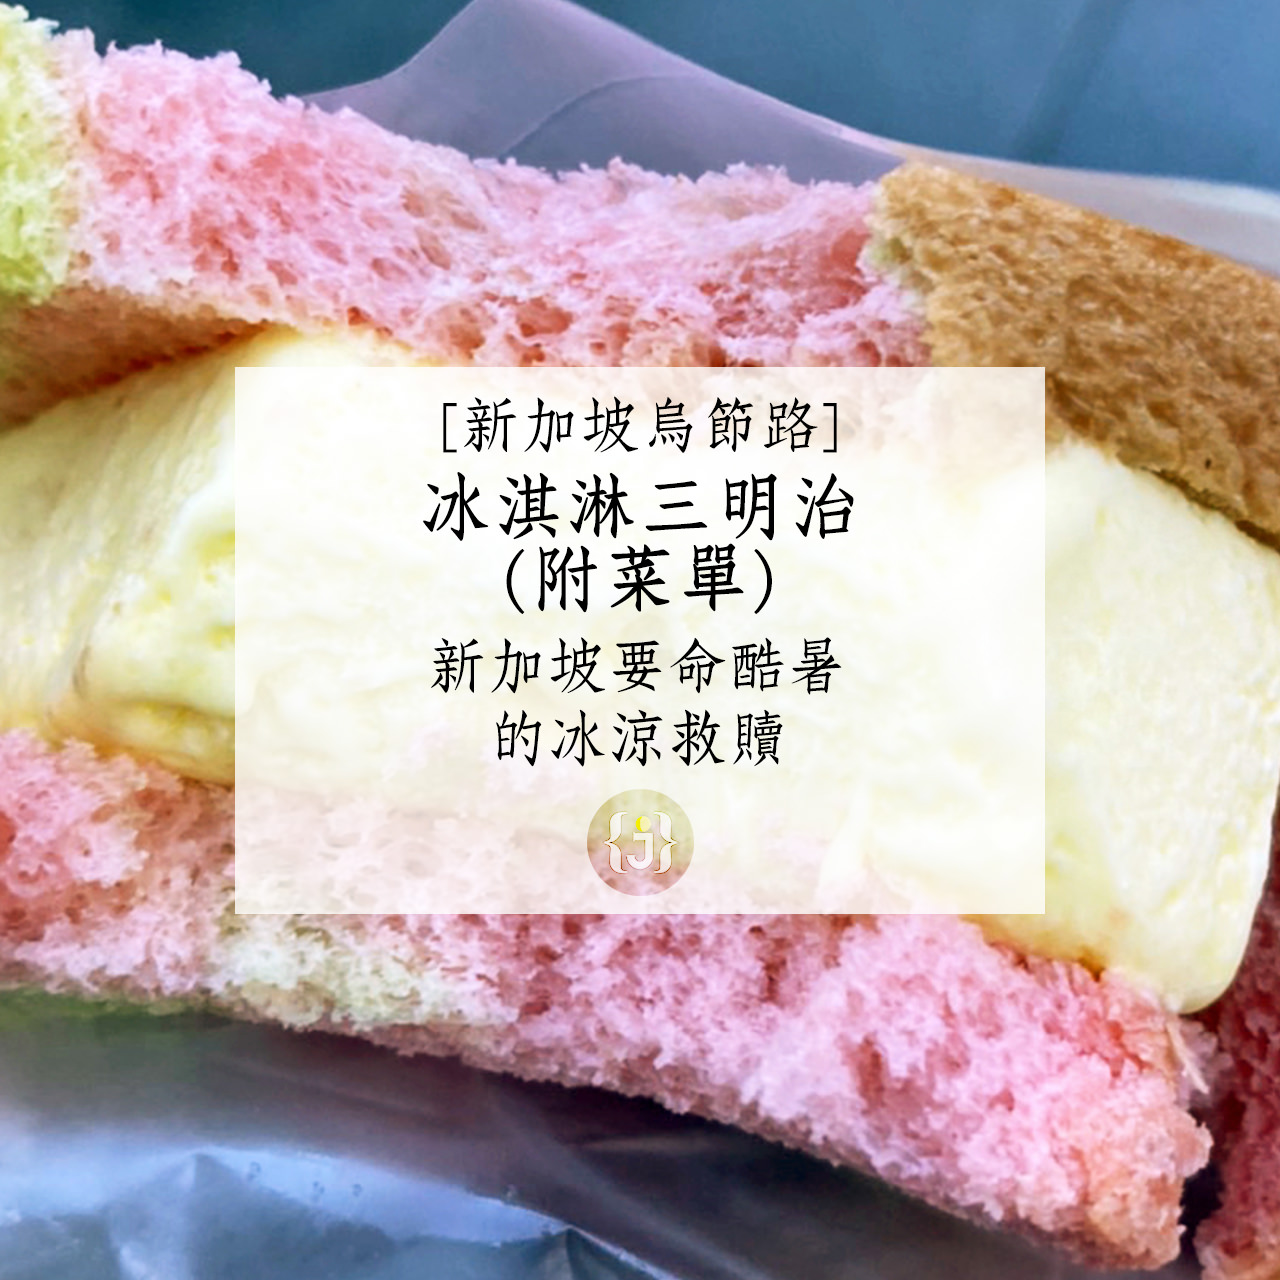 【新加坡烏節路】冰淇淋三明治附菜單新加坡要命酷暑的冰涼救贖